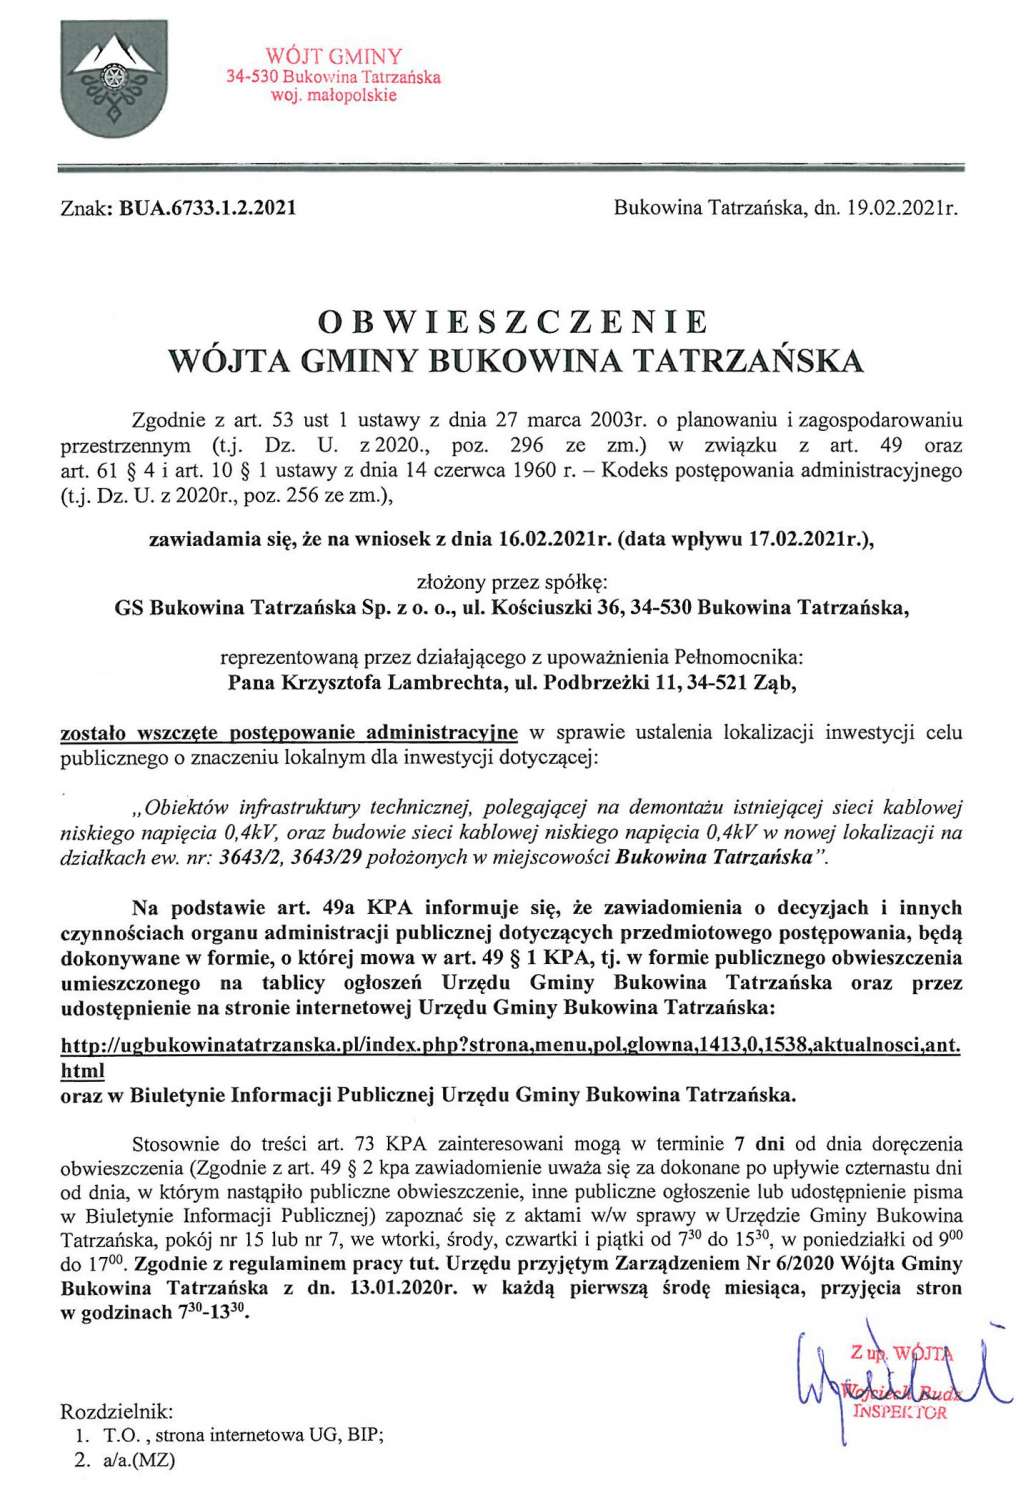 Obwieszczenie Wójta Gminy Bukowina Tatrzańska BUA 6733.1.2.2021